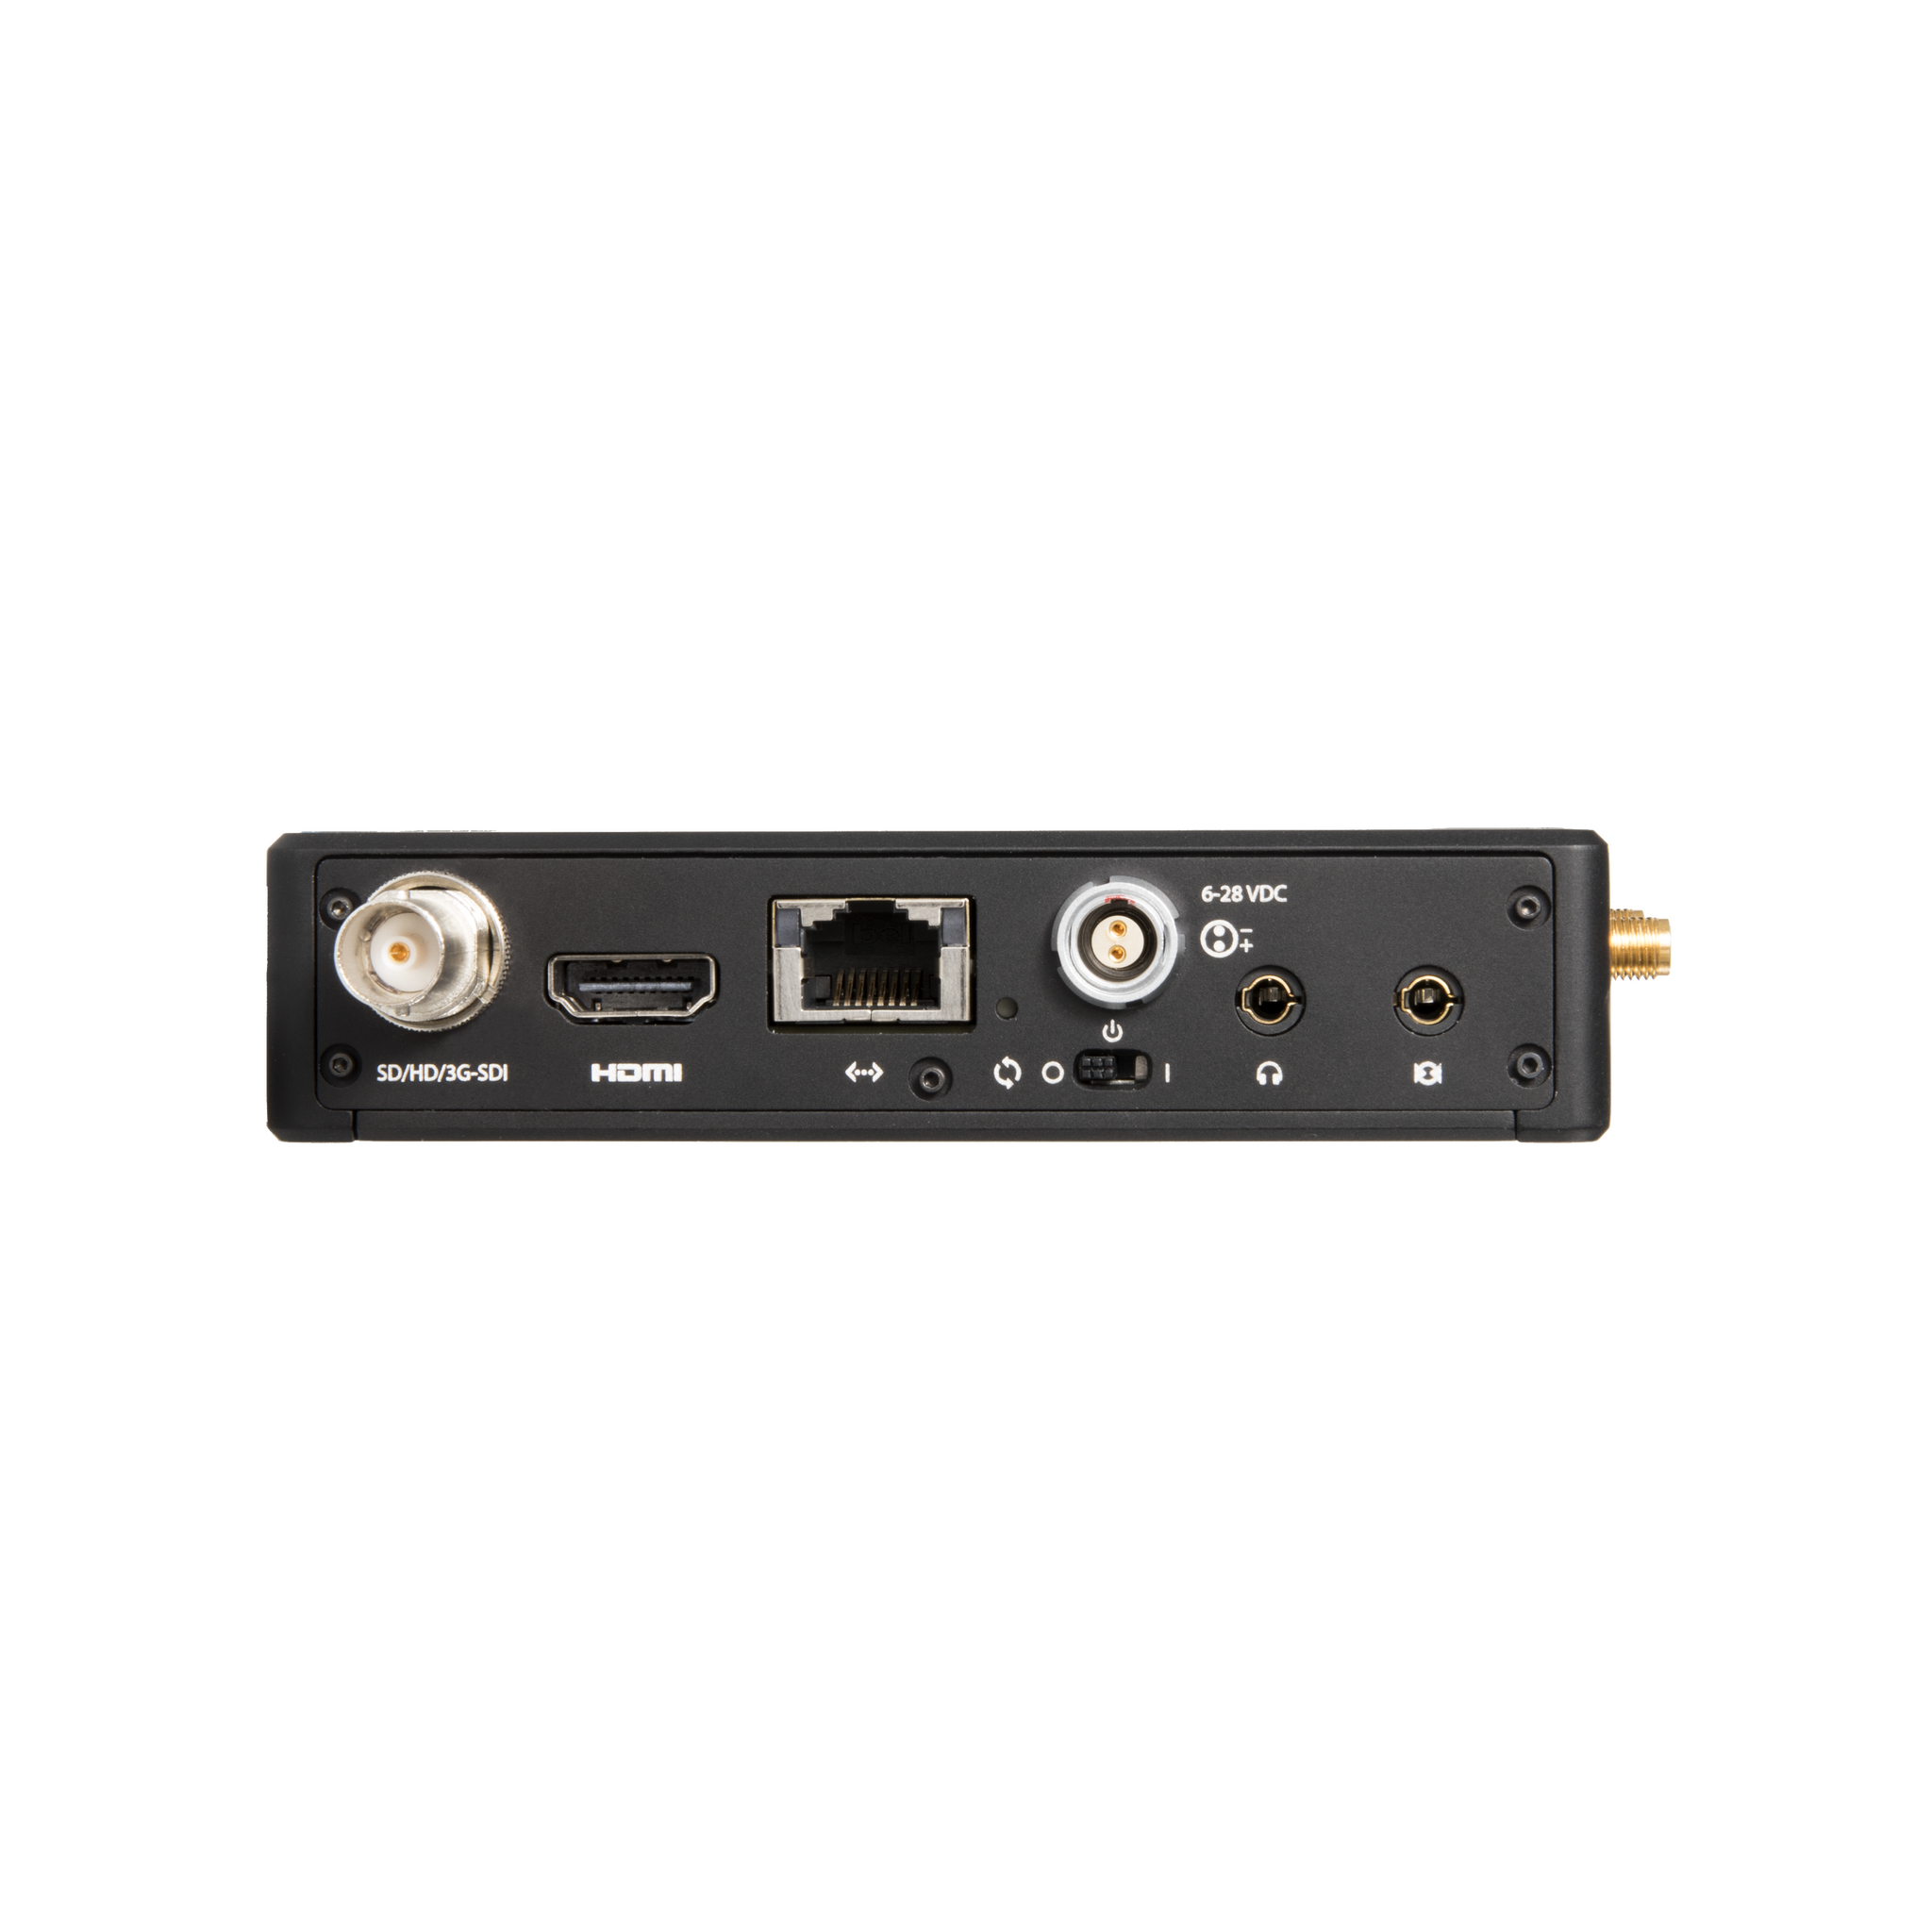 Cube 775 - HEVC/AVC (H.265/H.264) Decoder SDI/HDMI GbE WiFi – Teradek